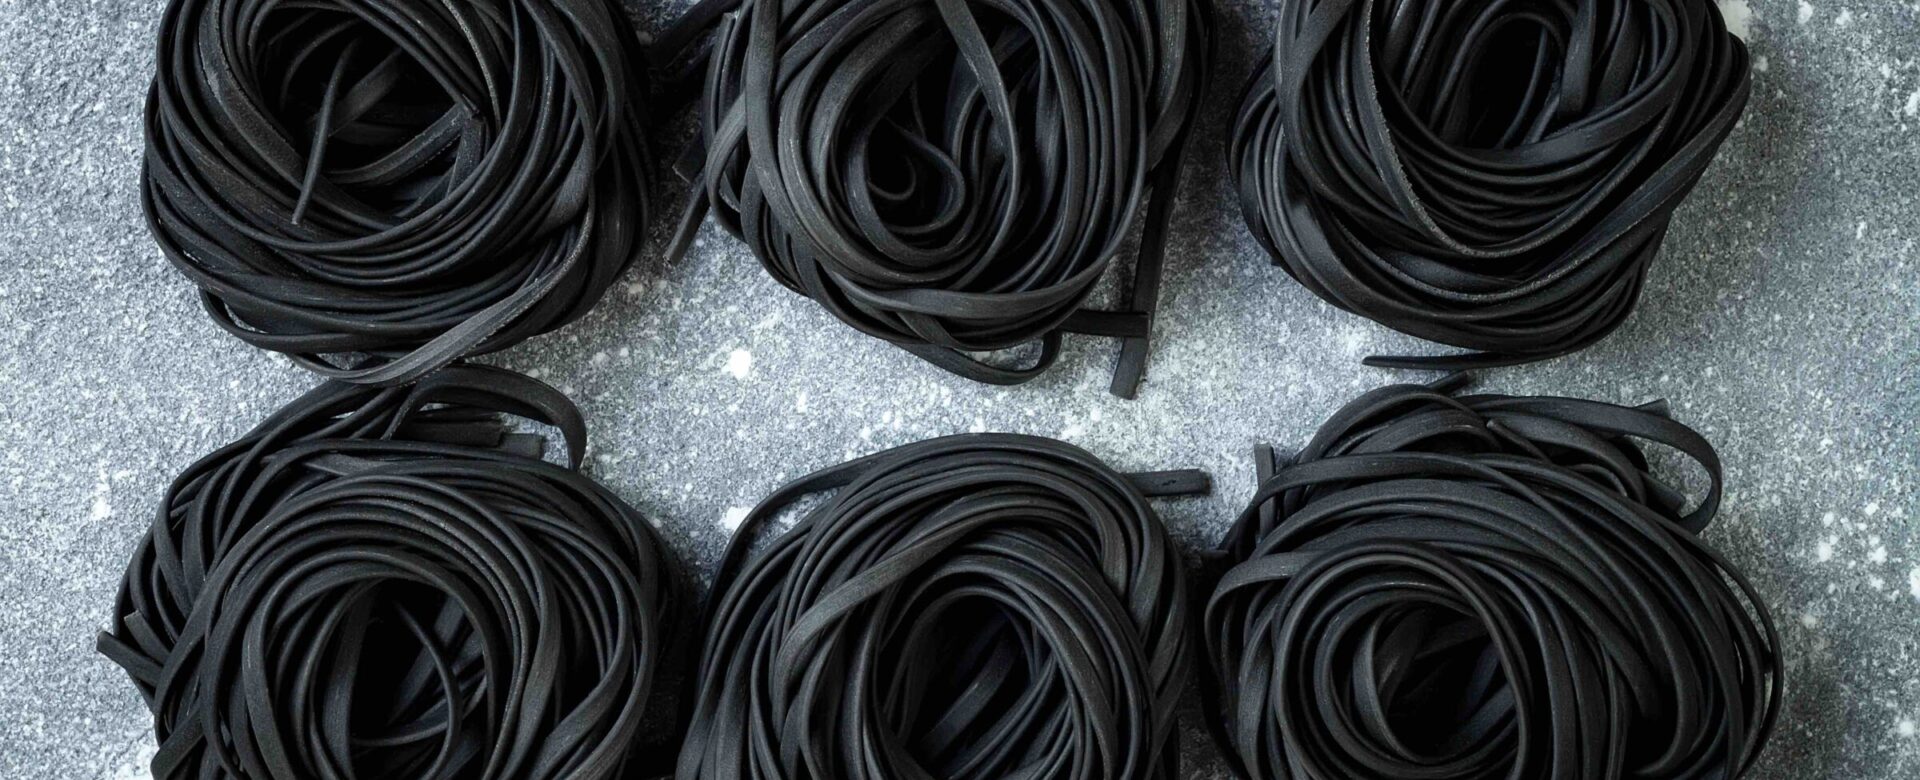 Wat is zwarte pasta en wat kun je er mee?